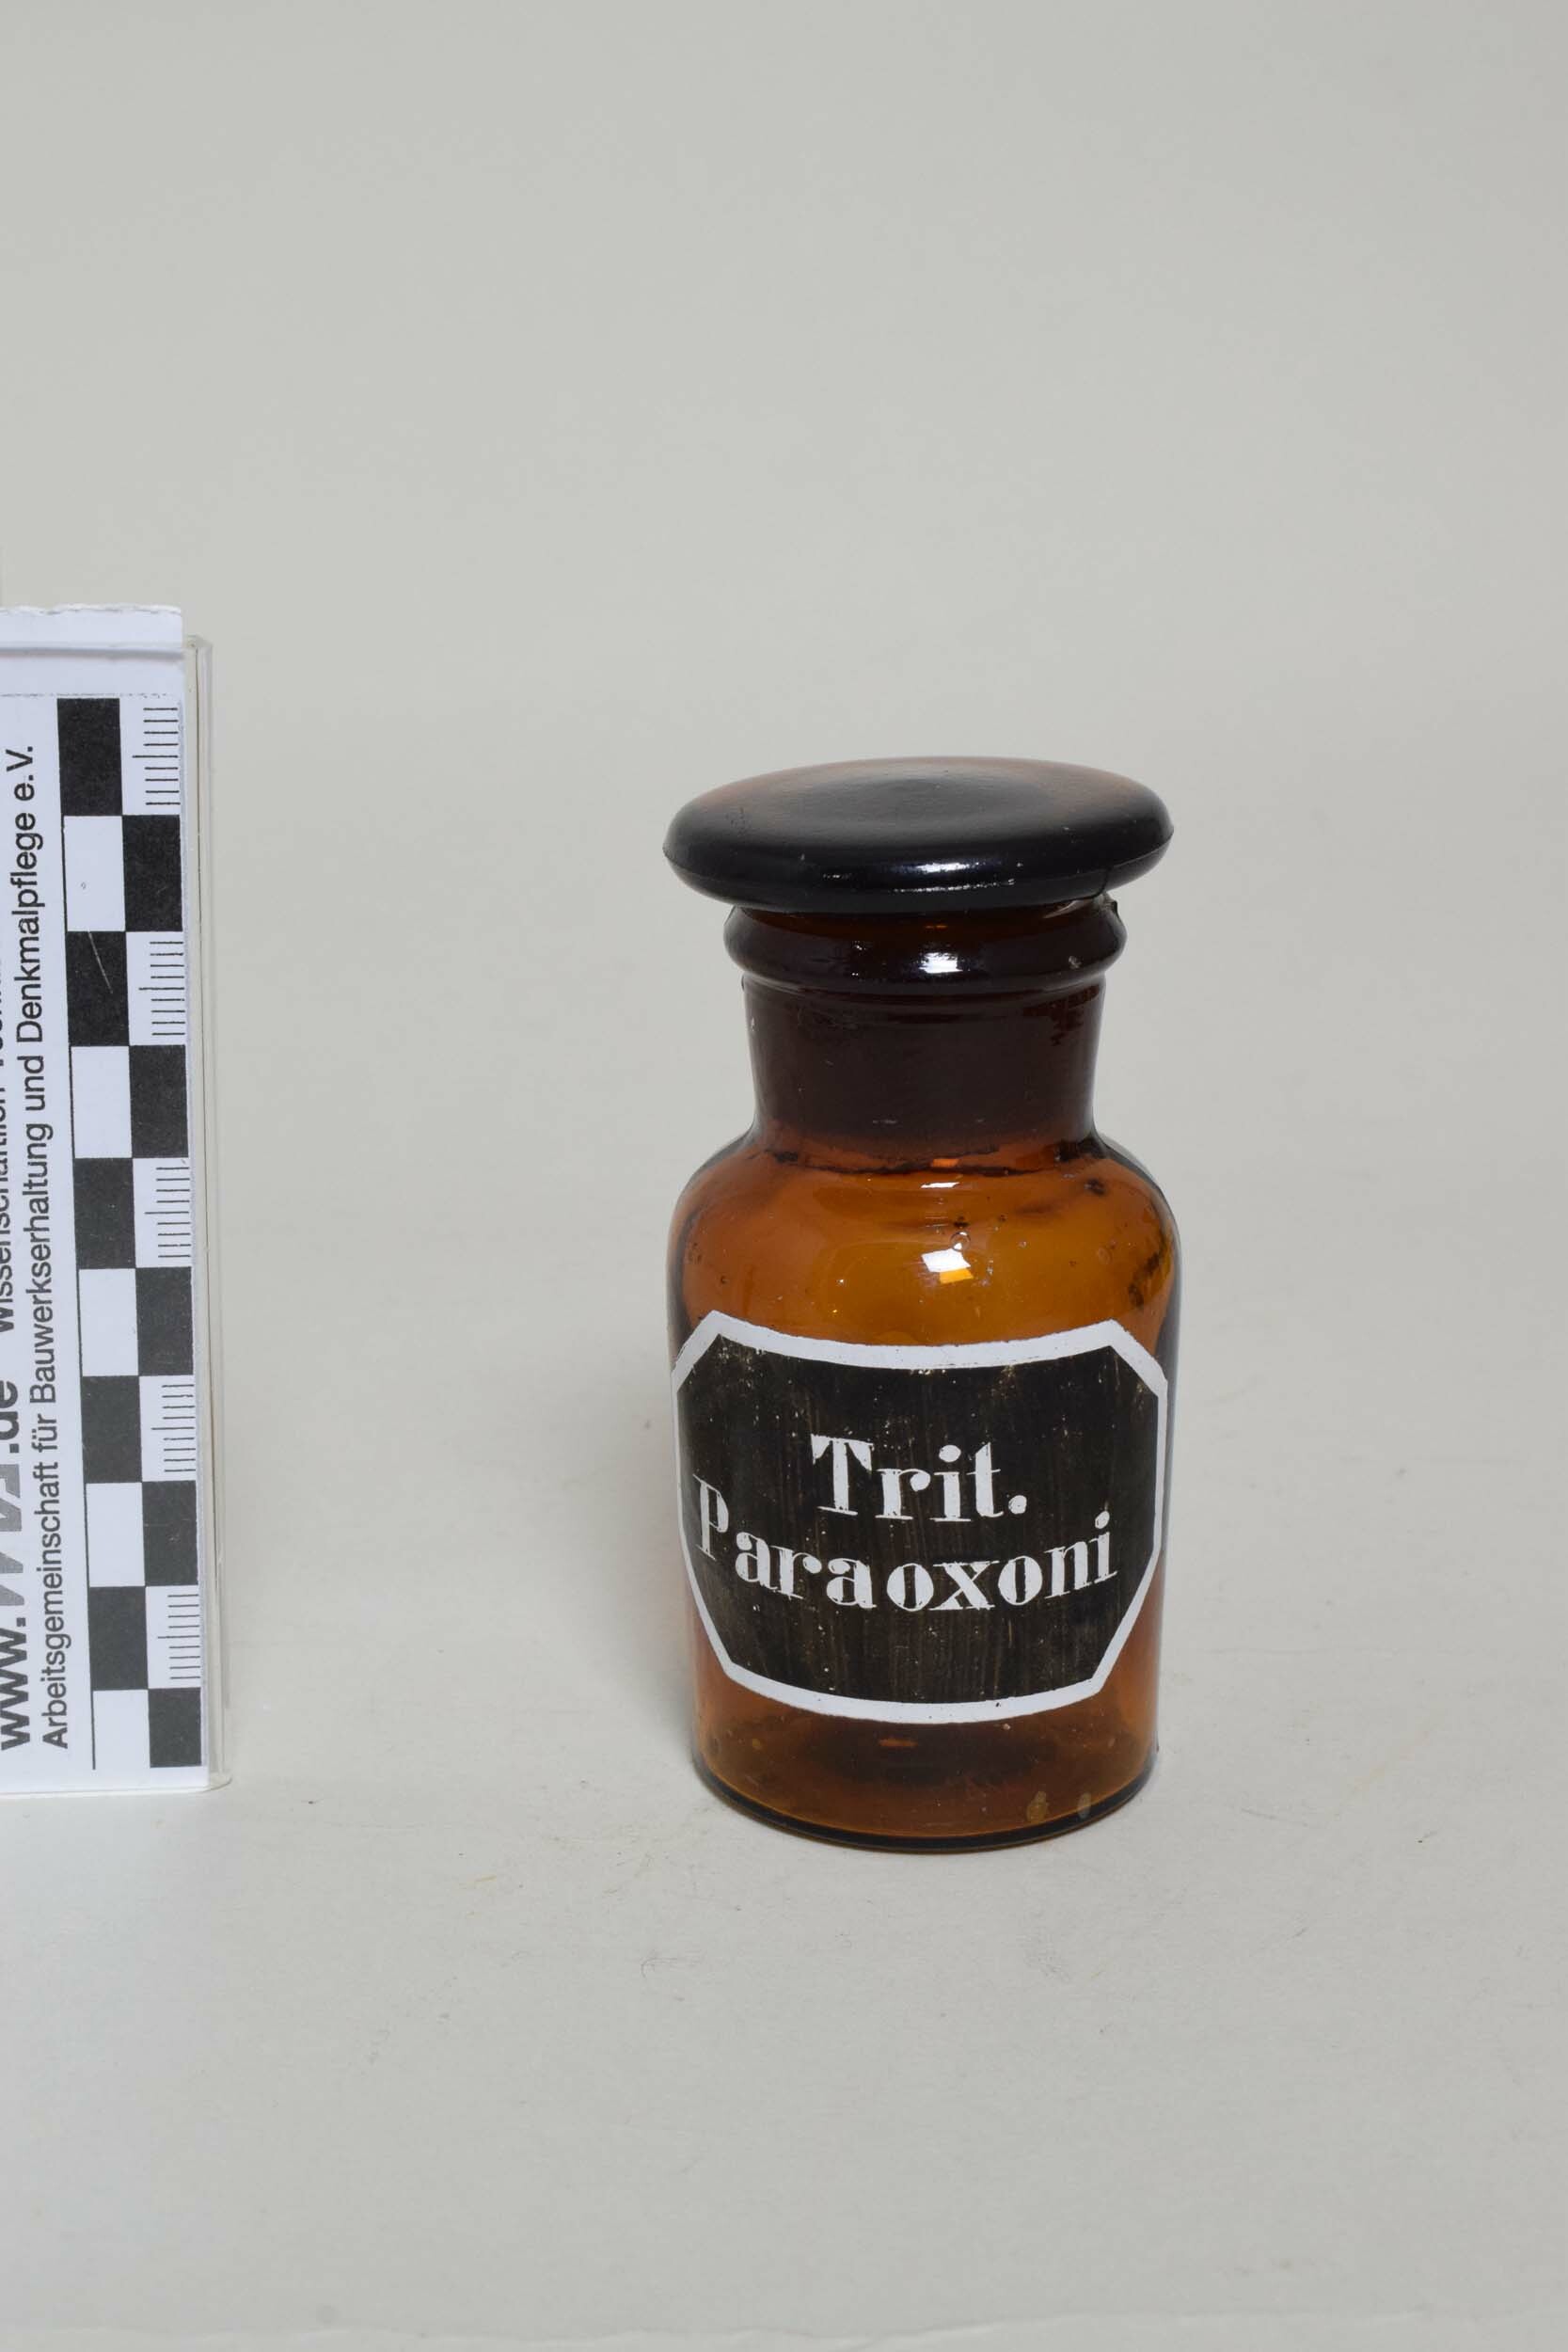 Apothekenflasche "Trit. Paraoxoni" (Trituratione=Verreibung) (Heimatmuseum Dohna CC BY-NC-SA)